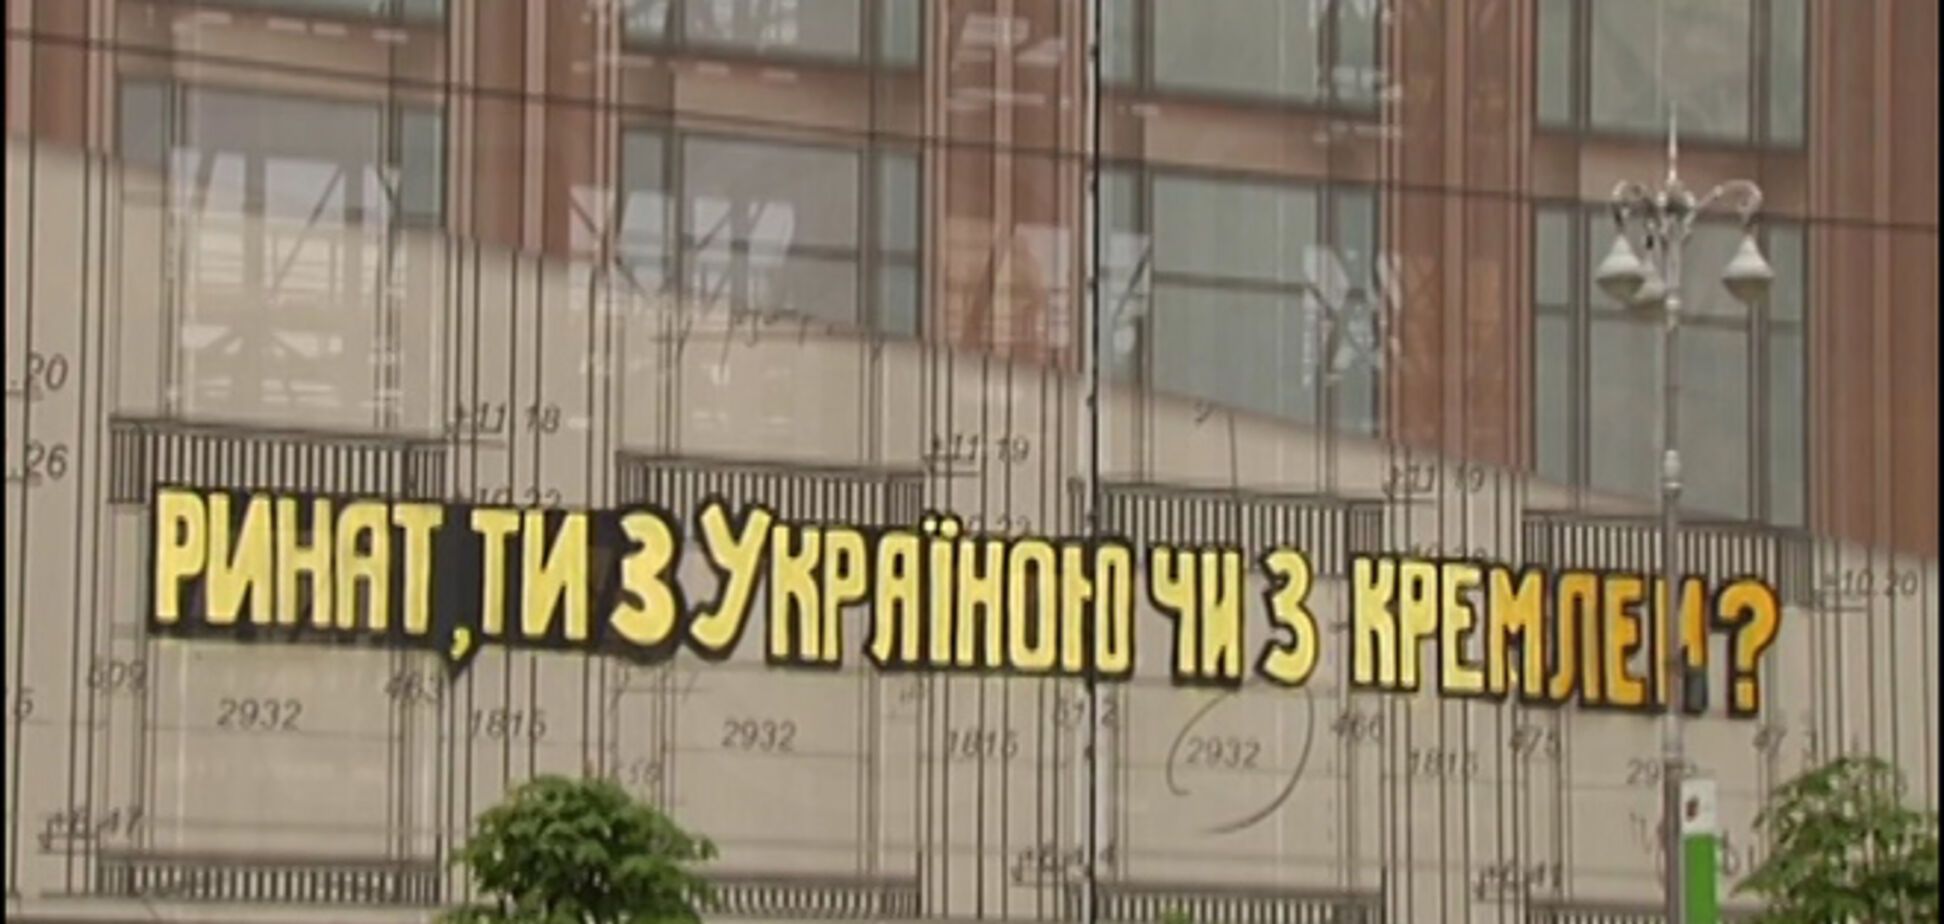 Ахметову оставили послание в центре Киева